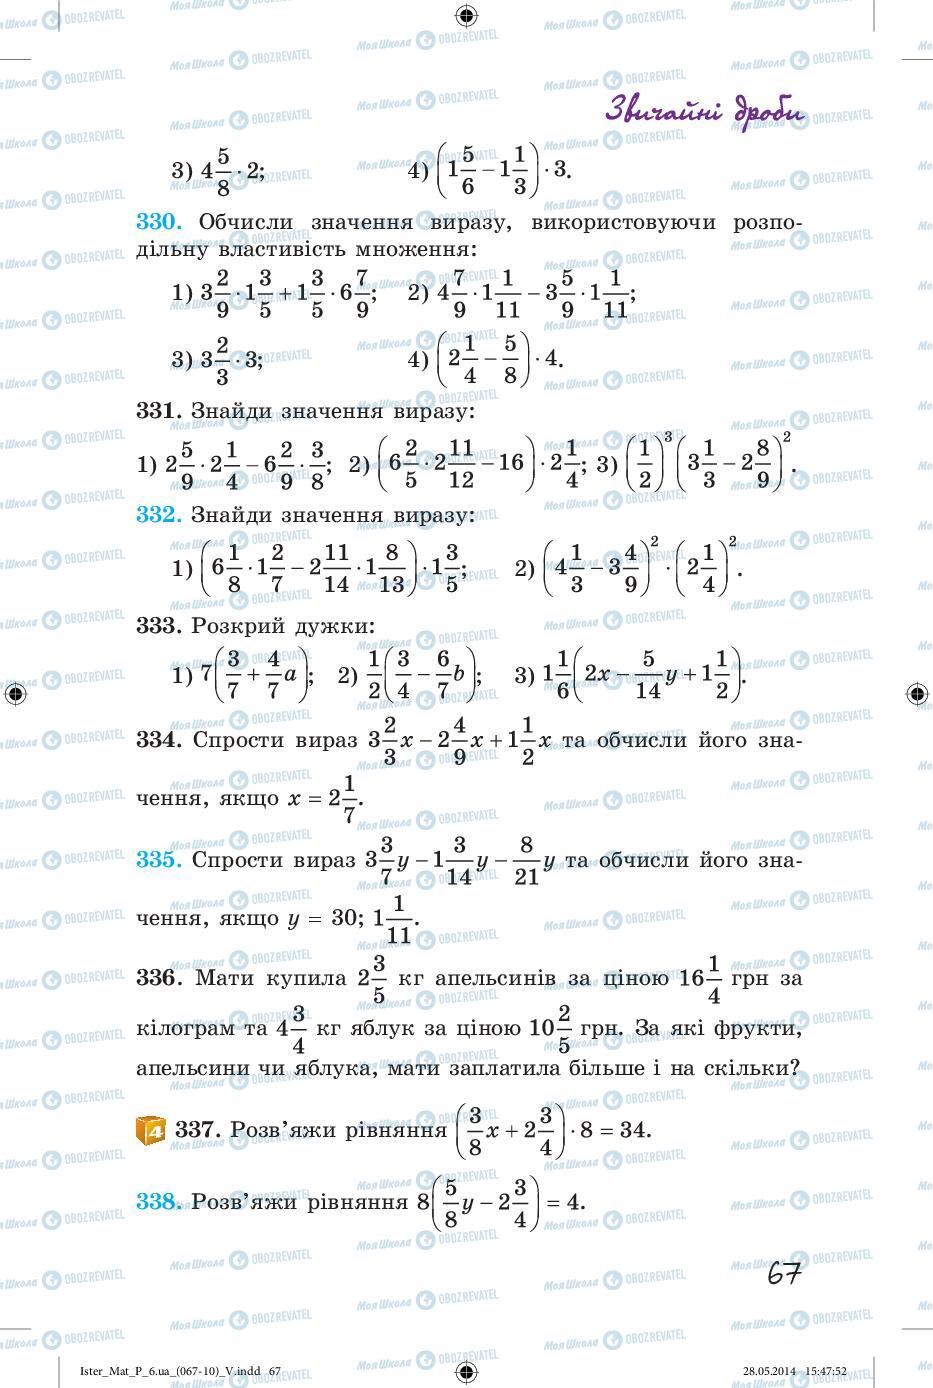 Підручники Математика 6 клас сторінка 67